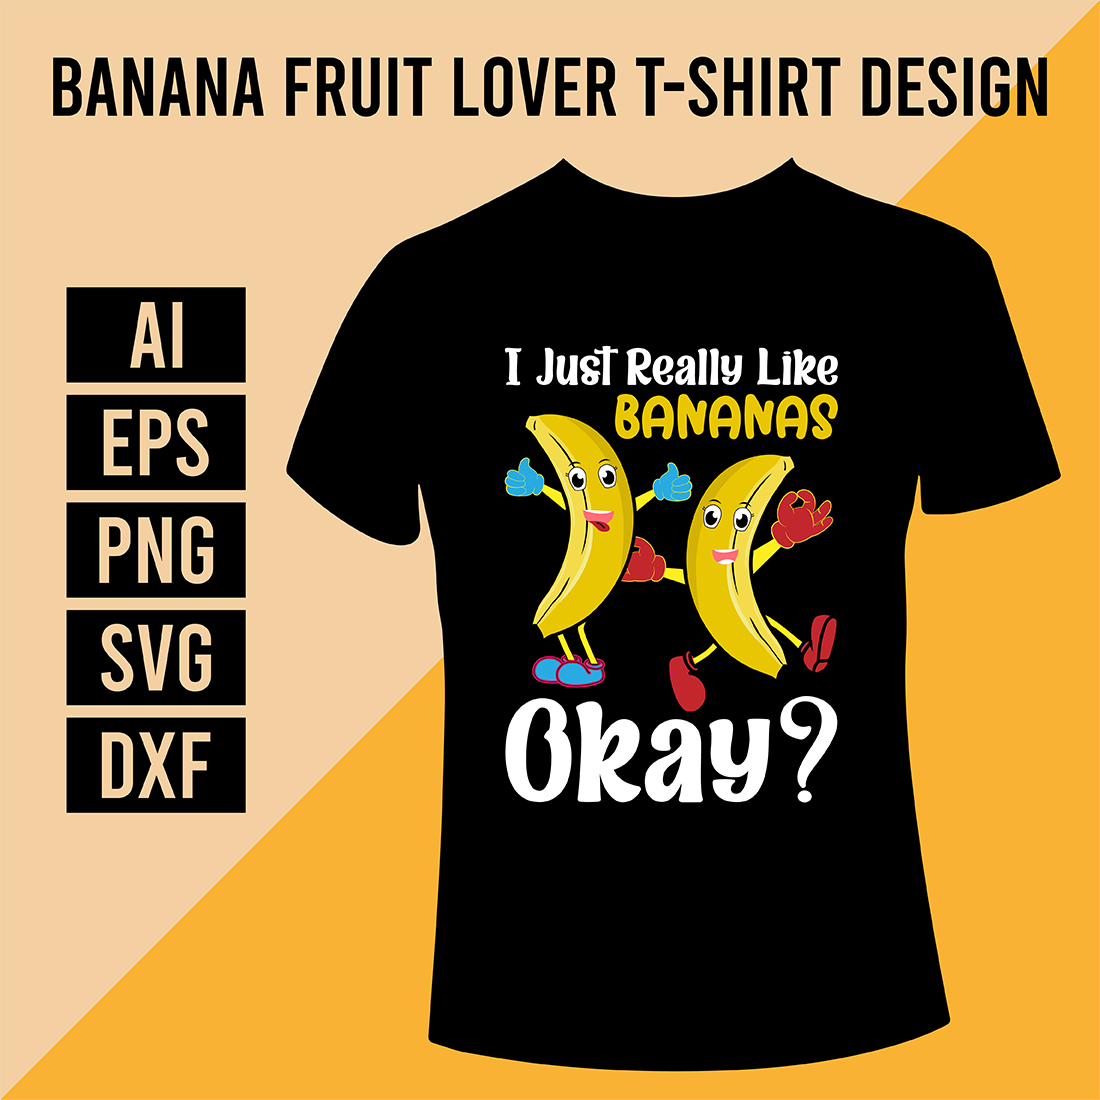 Banana Fruit Lover T-Shirt Design cover image.